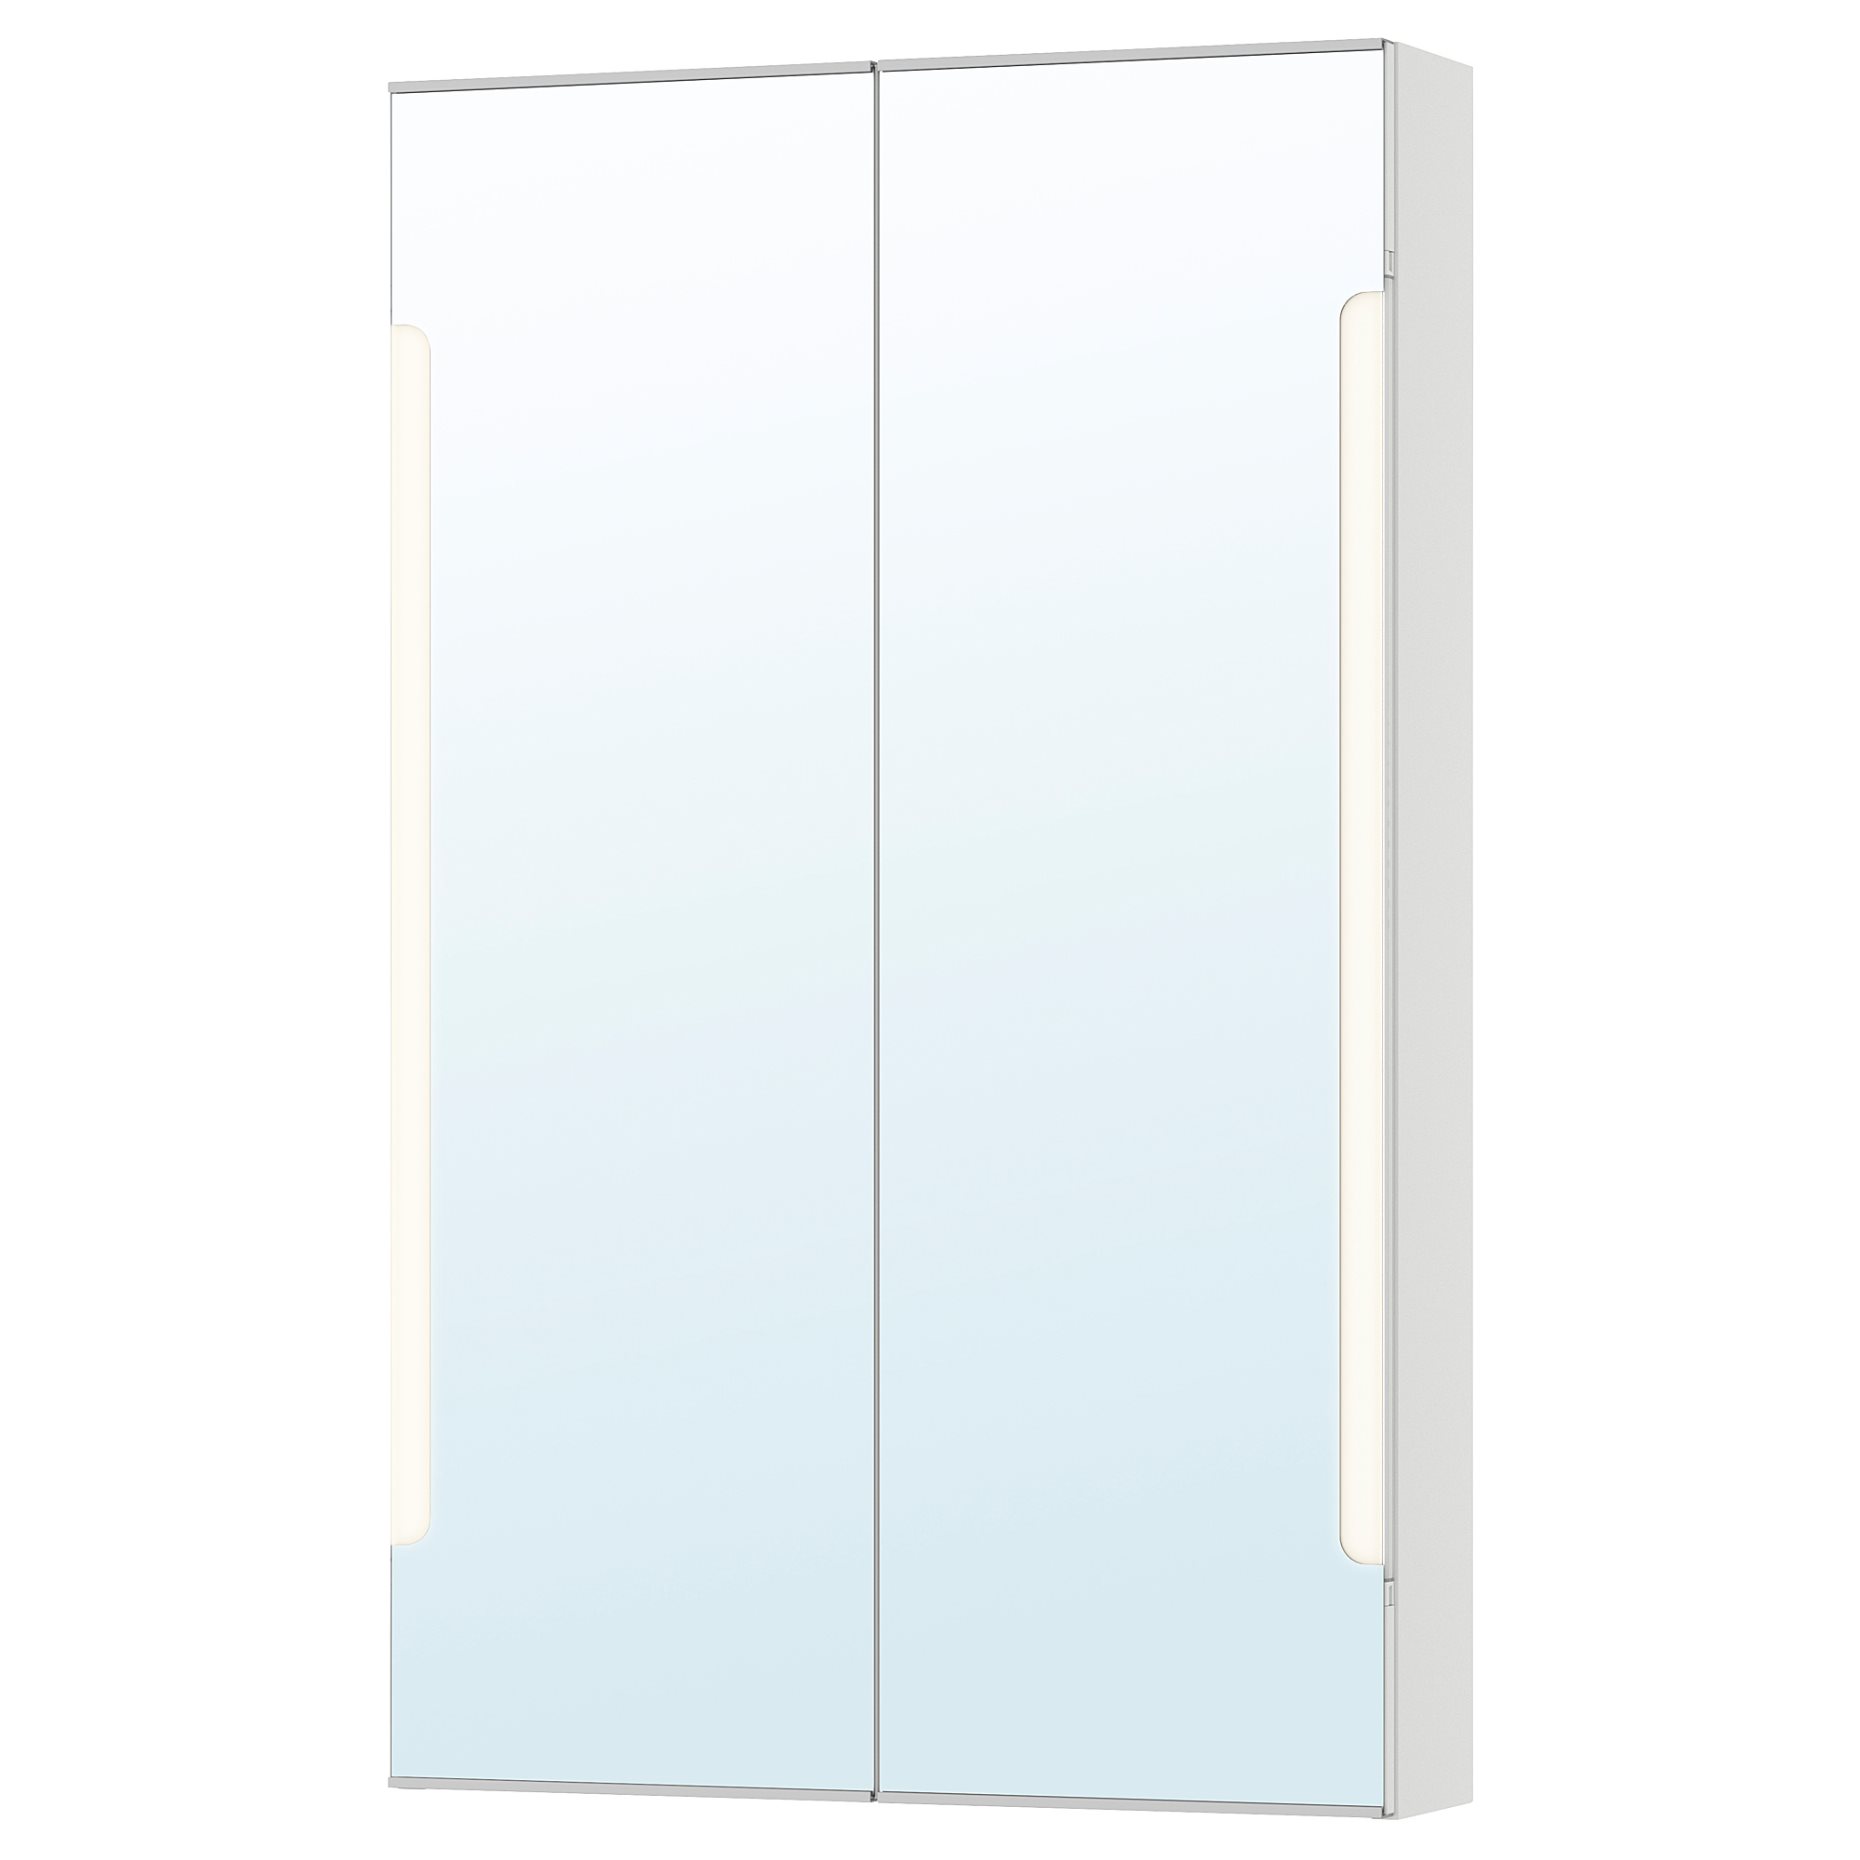 STORJORM, огледален шкаф с 2 врати/вградено осветление, 60x14x96 см, бяло, 402.481.22